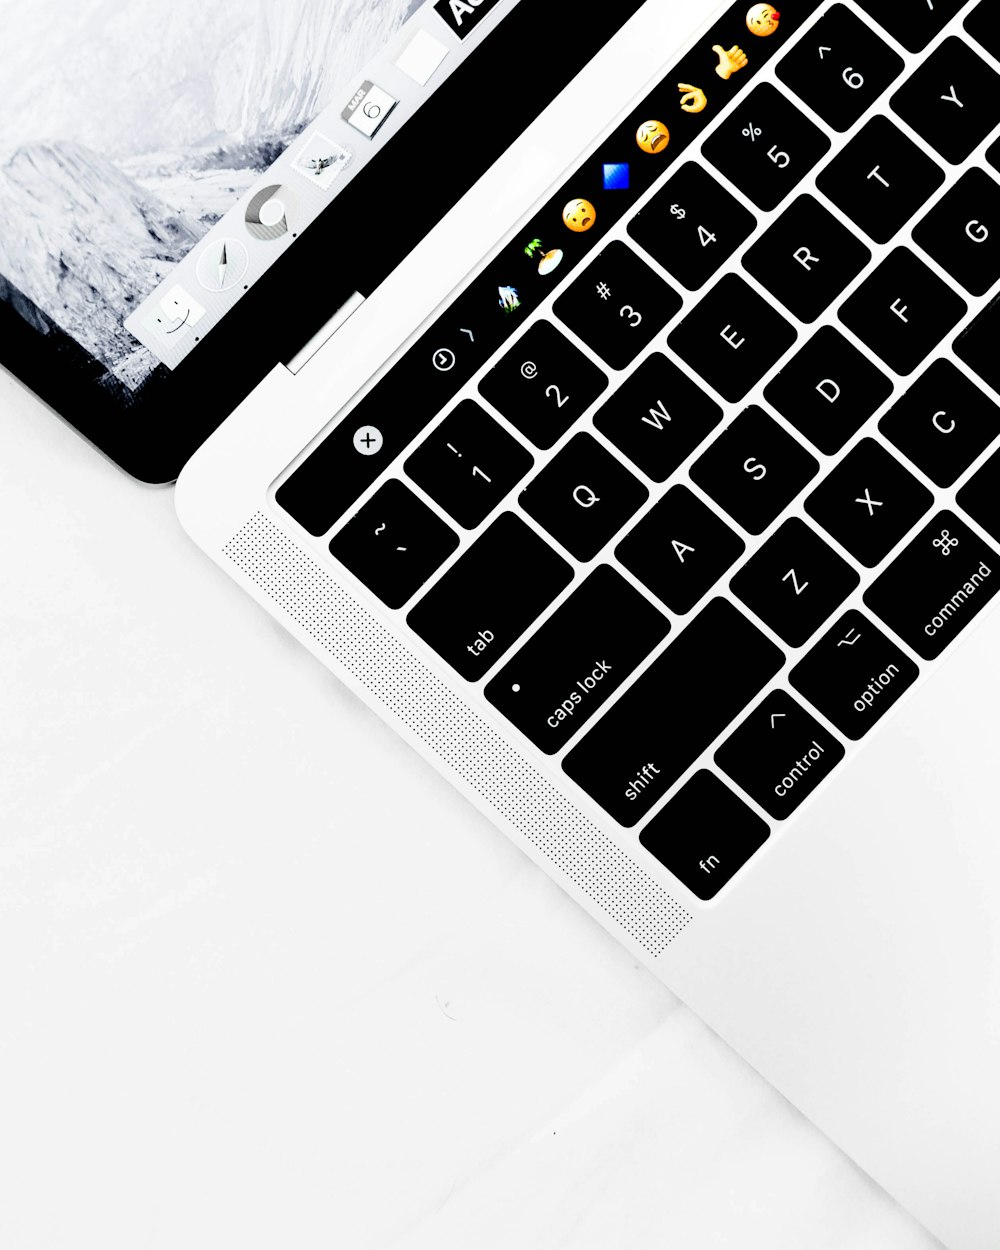 foto de closeup do computador portátil branco e preto